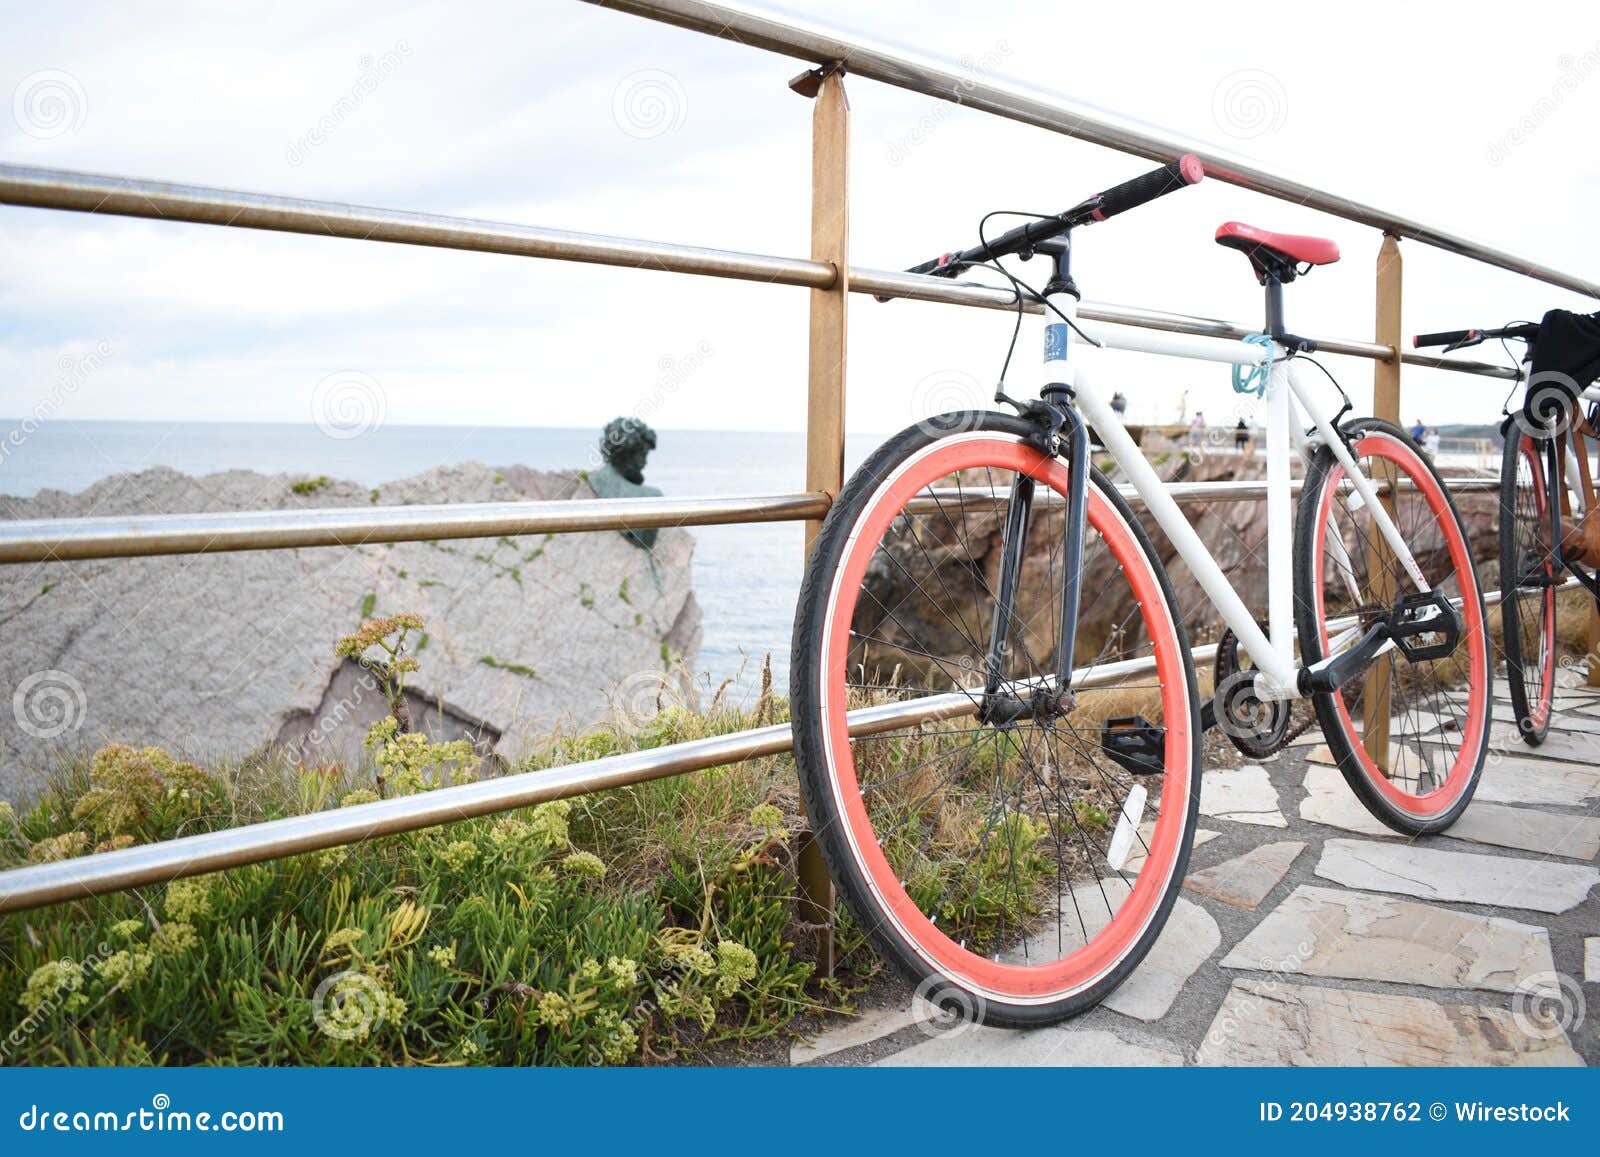 bicicleta aparcada sobre una barandilla con unas hermosas vistas al mar